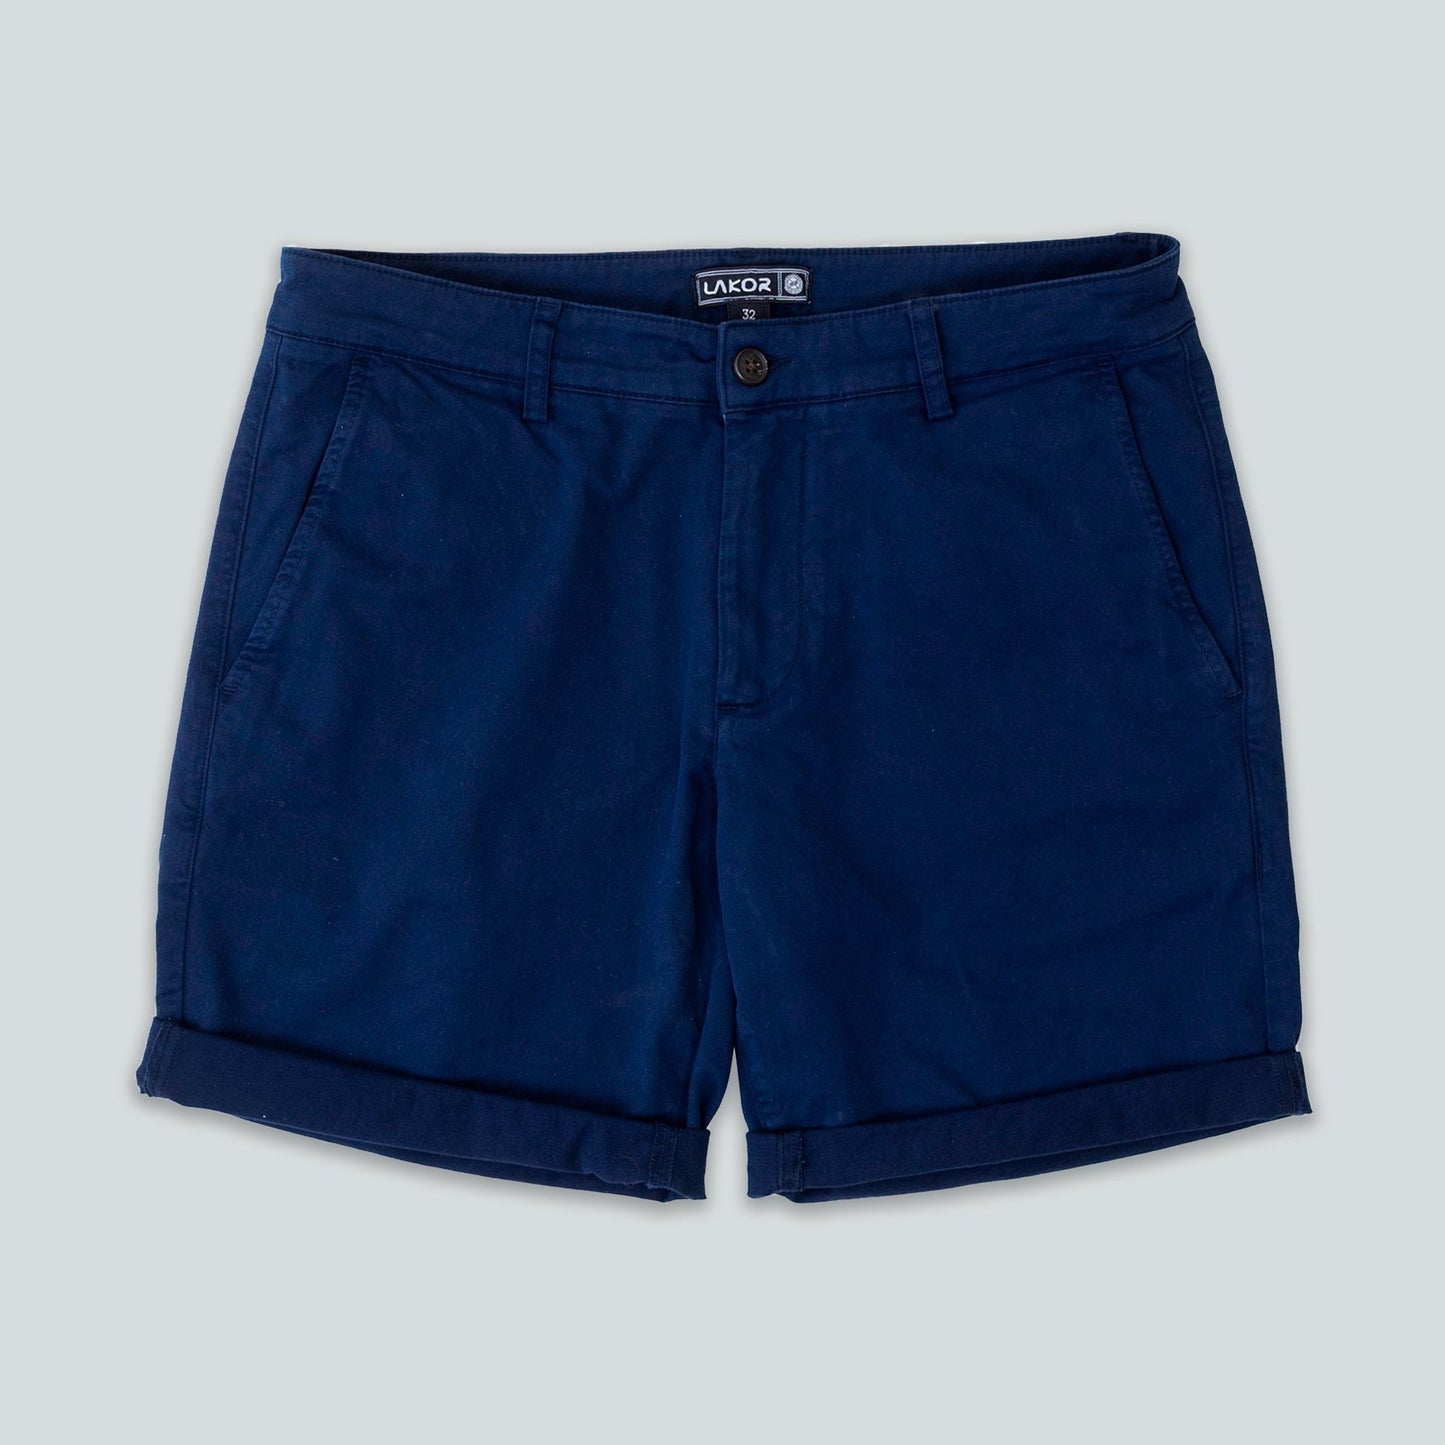 Lakor - Chino Shorts (Navy)